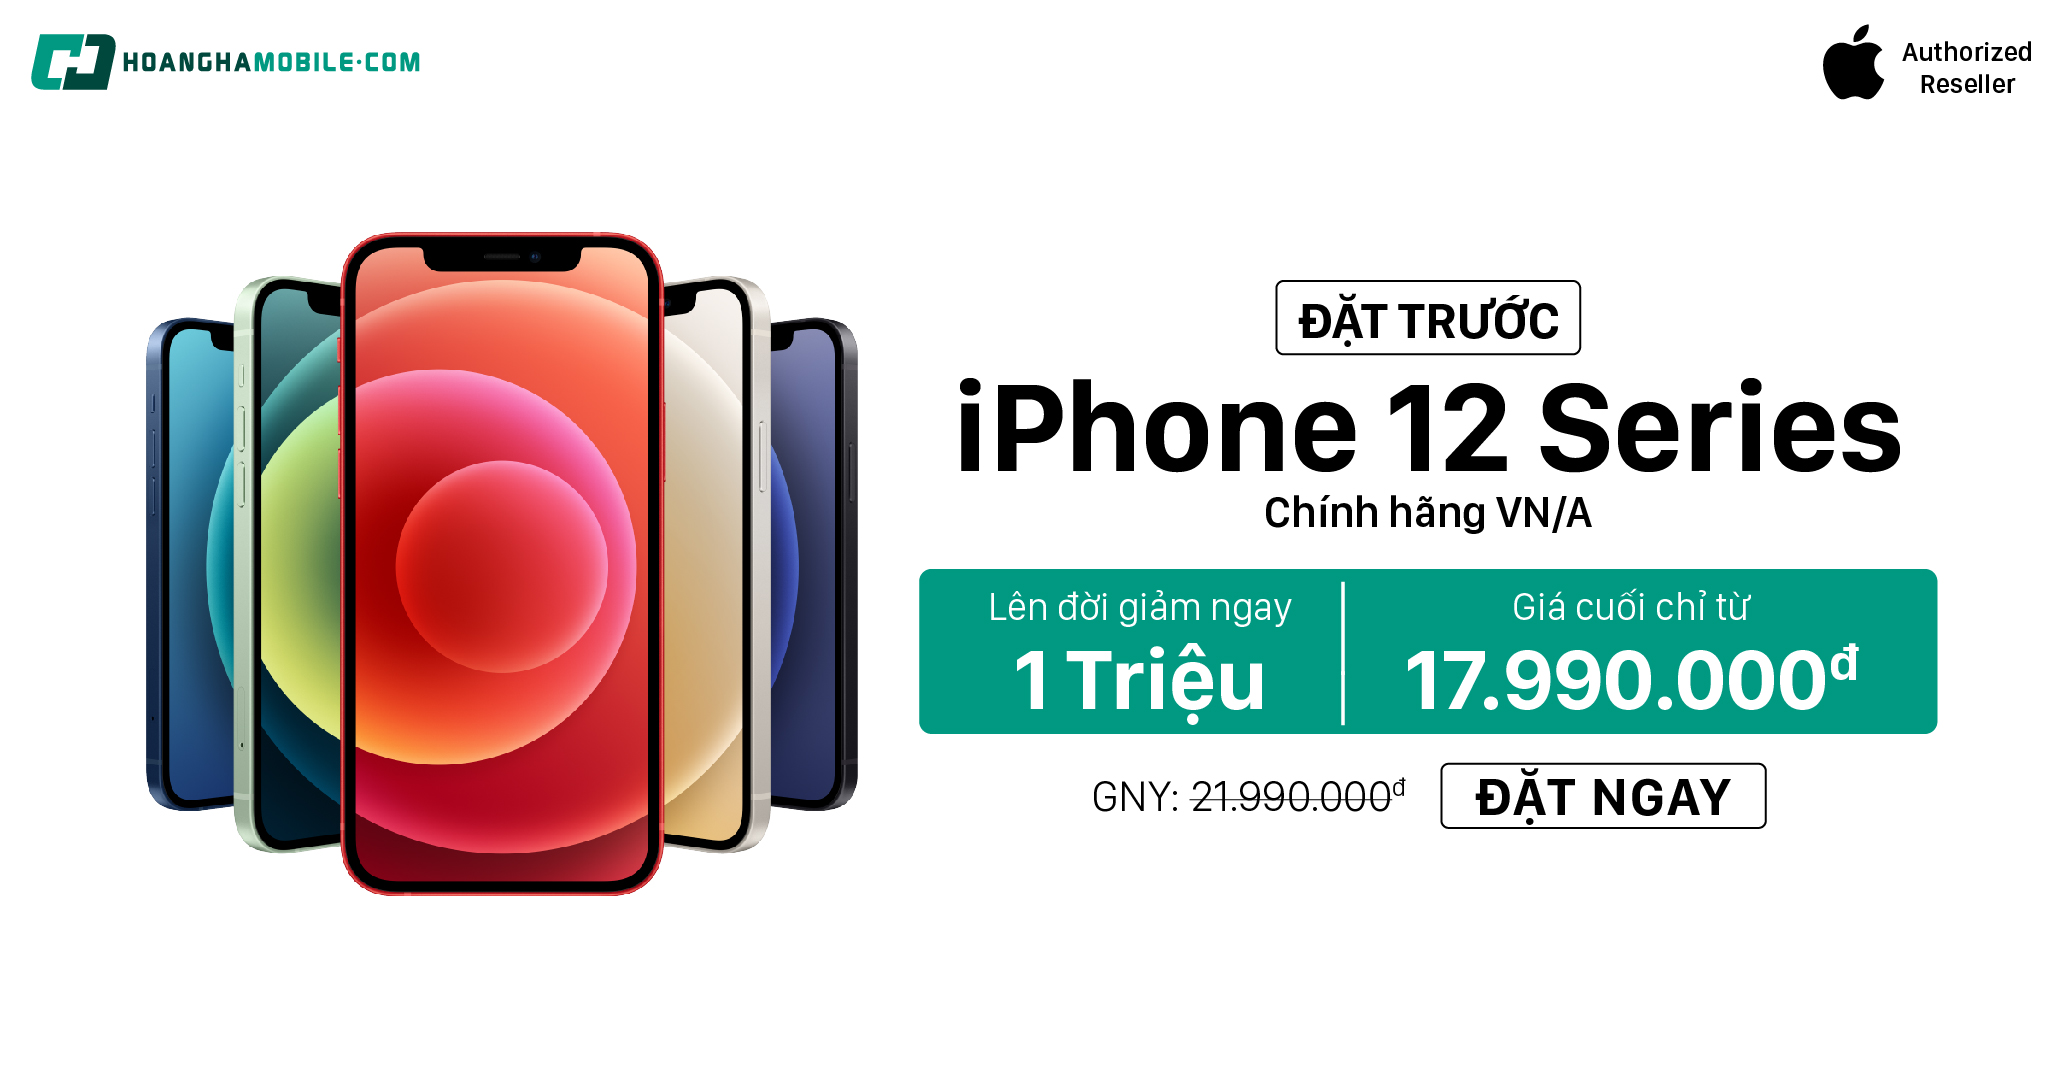 dat-truoc-iphone-12-series-1